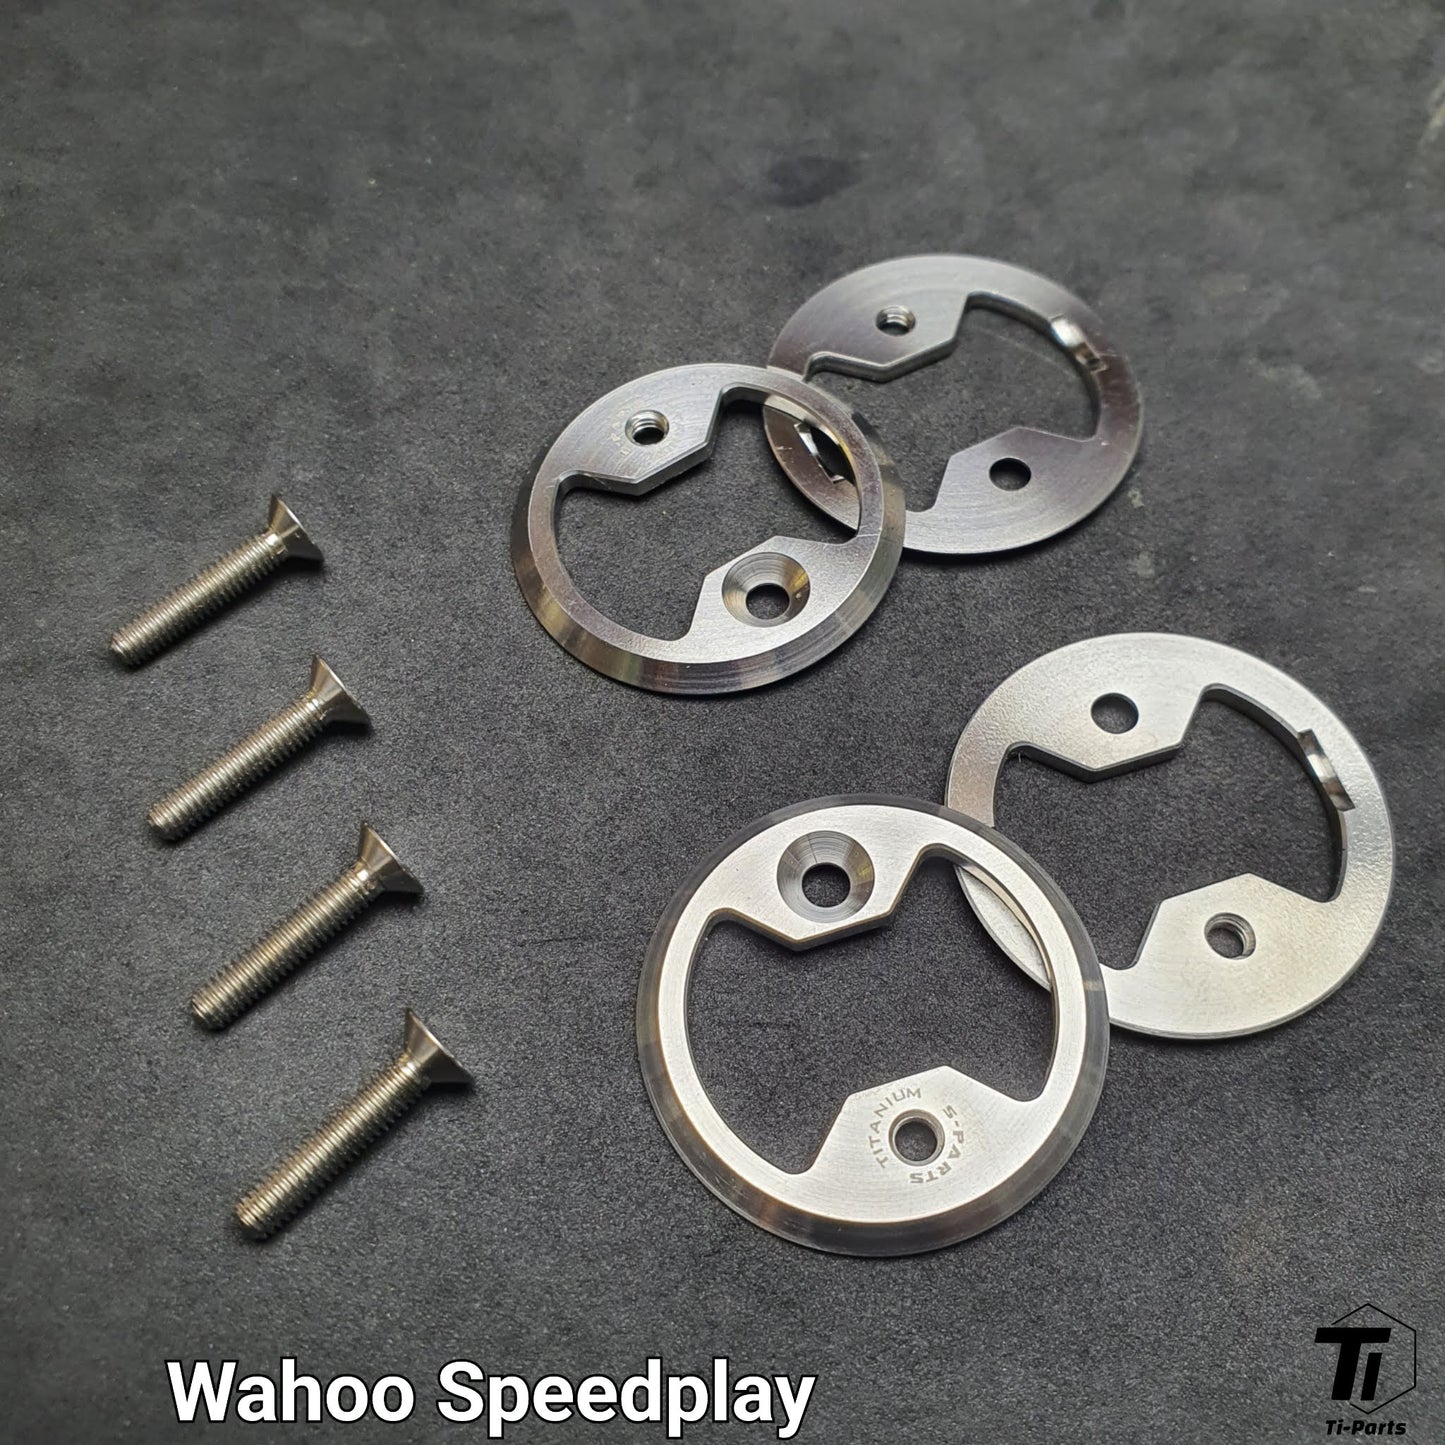 鈦 Wahoo SpeedPlay 升級套件 | Prwlink 零功率計踏板 |新加坡 5 級鈦合金